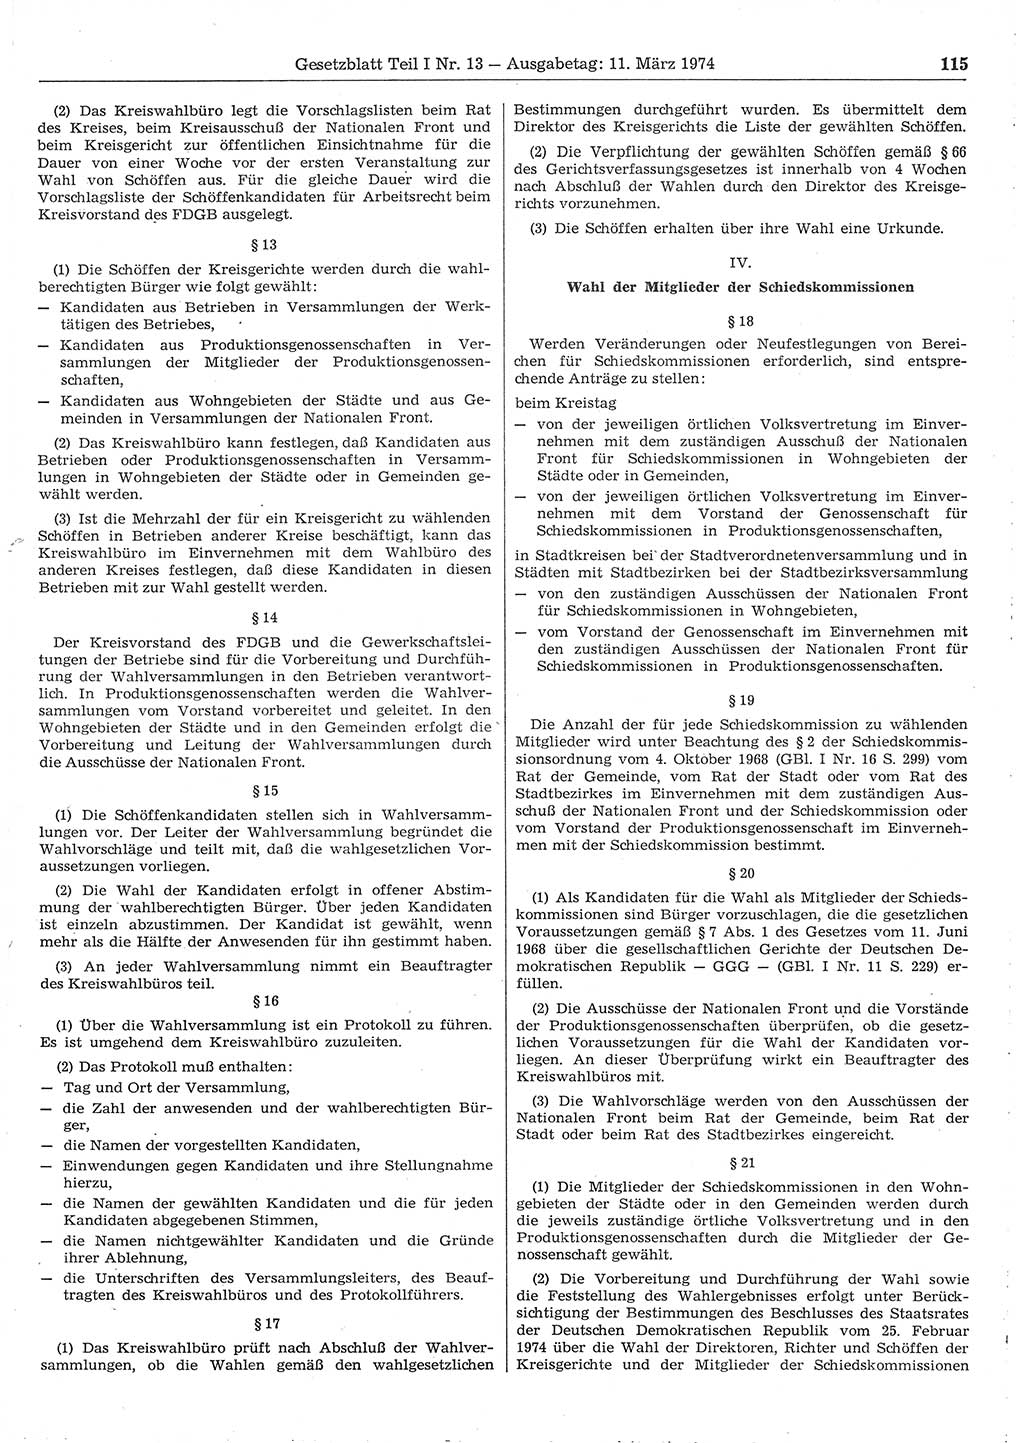 Gesetzblatt (GBl.) der Deutschen Demokratischen Republik (DDR) Teil Ⅰ 1974, Seite 115 (GBl. DDR Ⅰ 1974, S. 115)